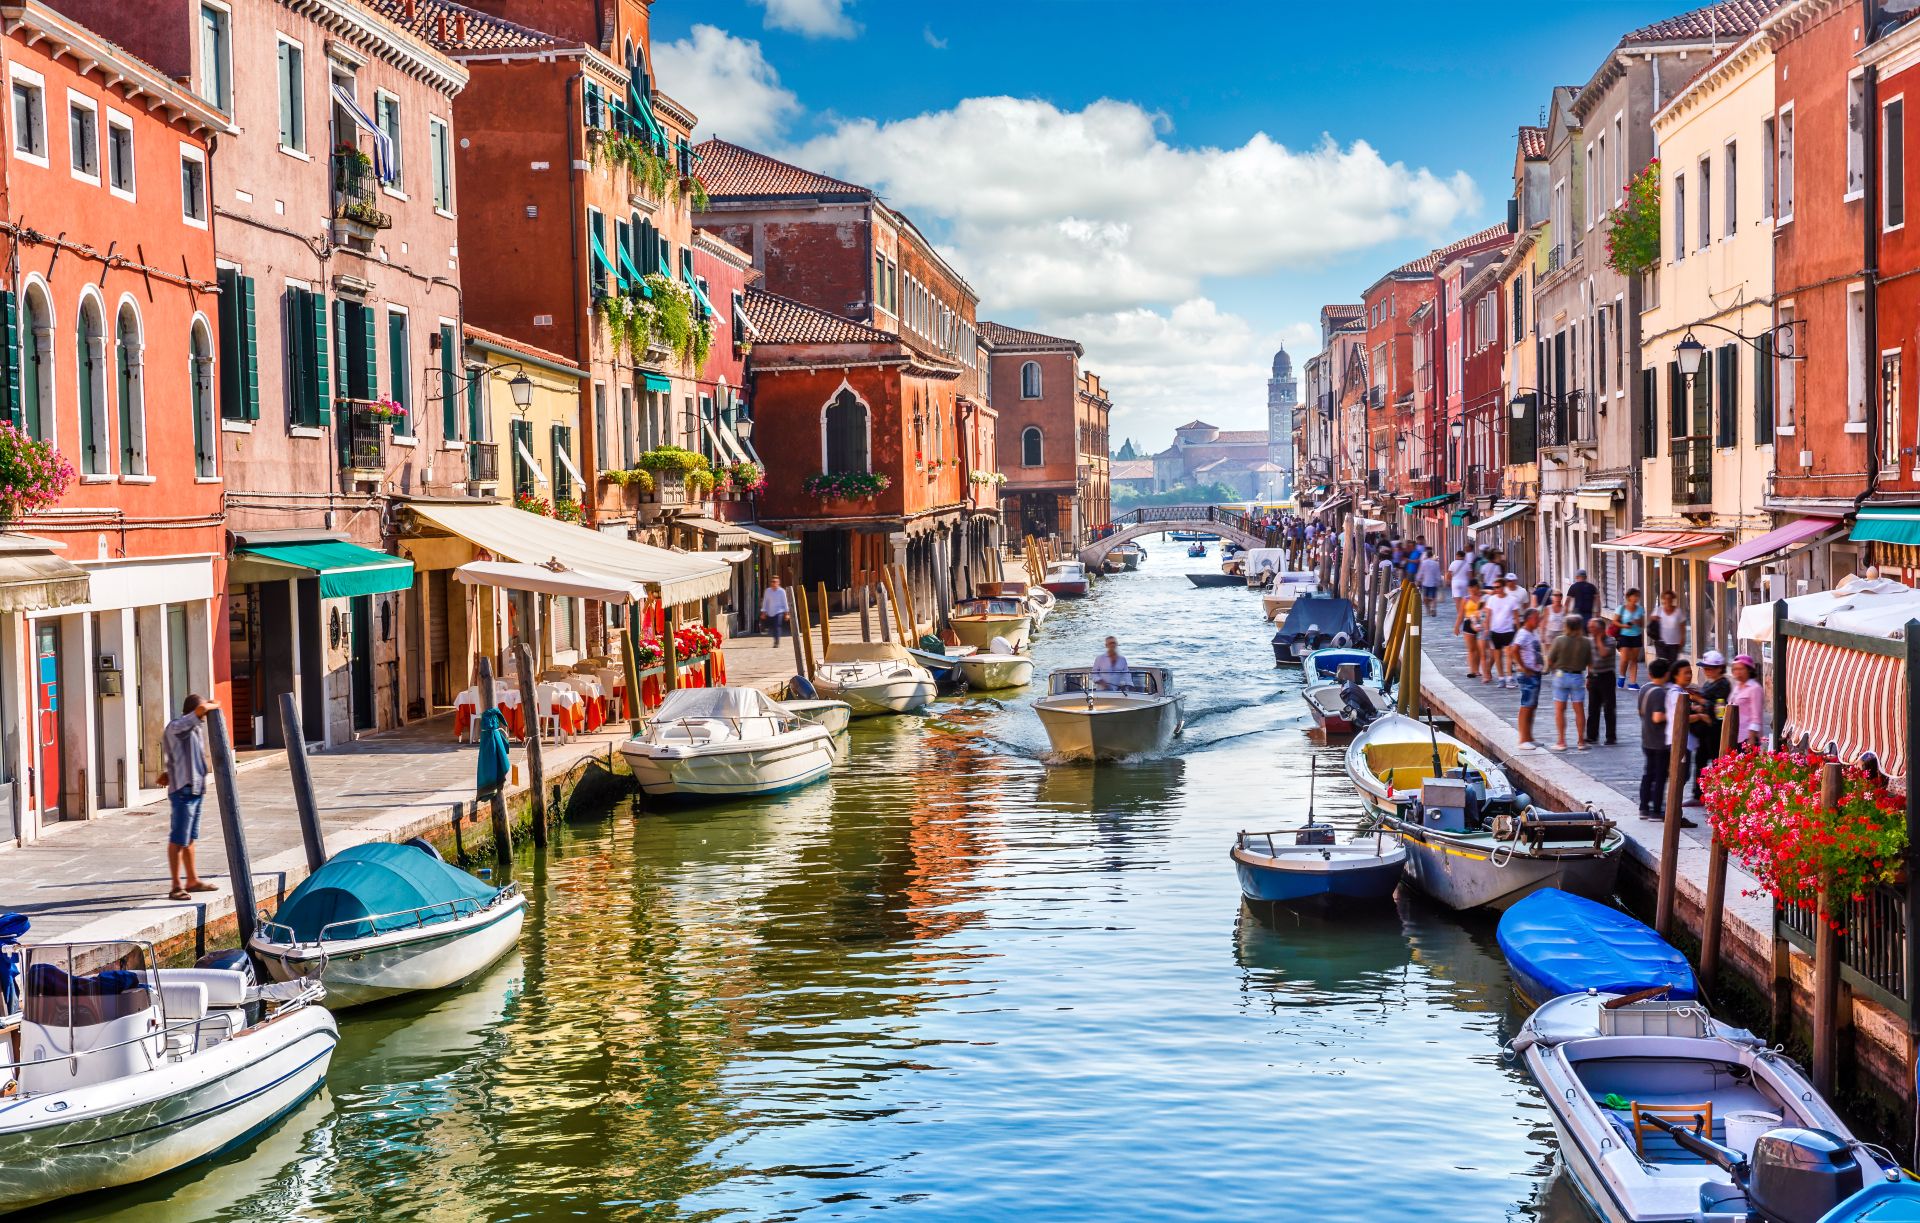 Island Murano in Venice Italy.